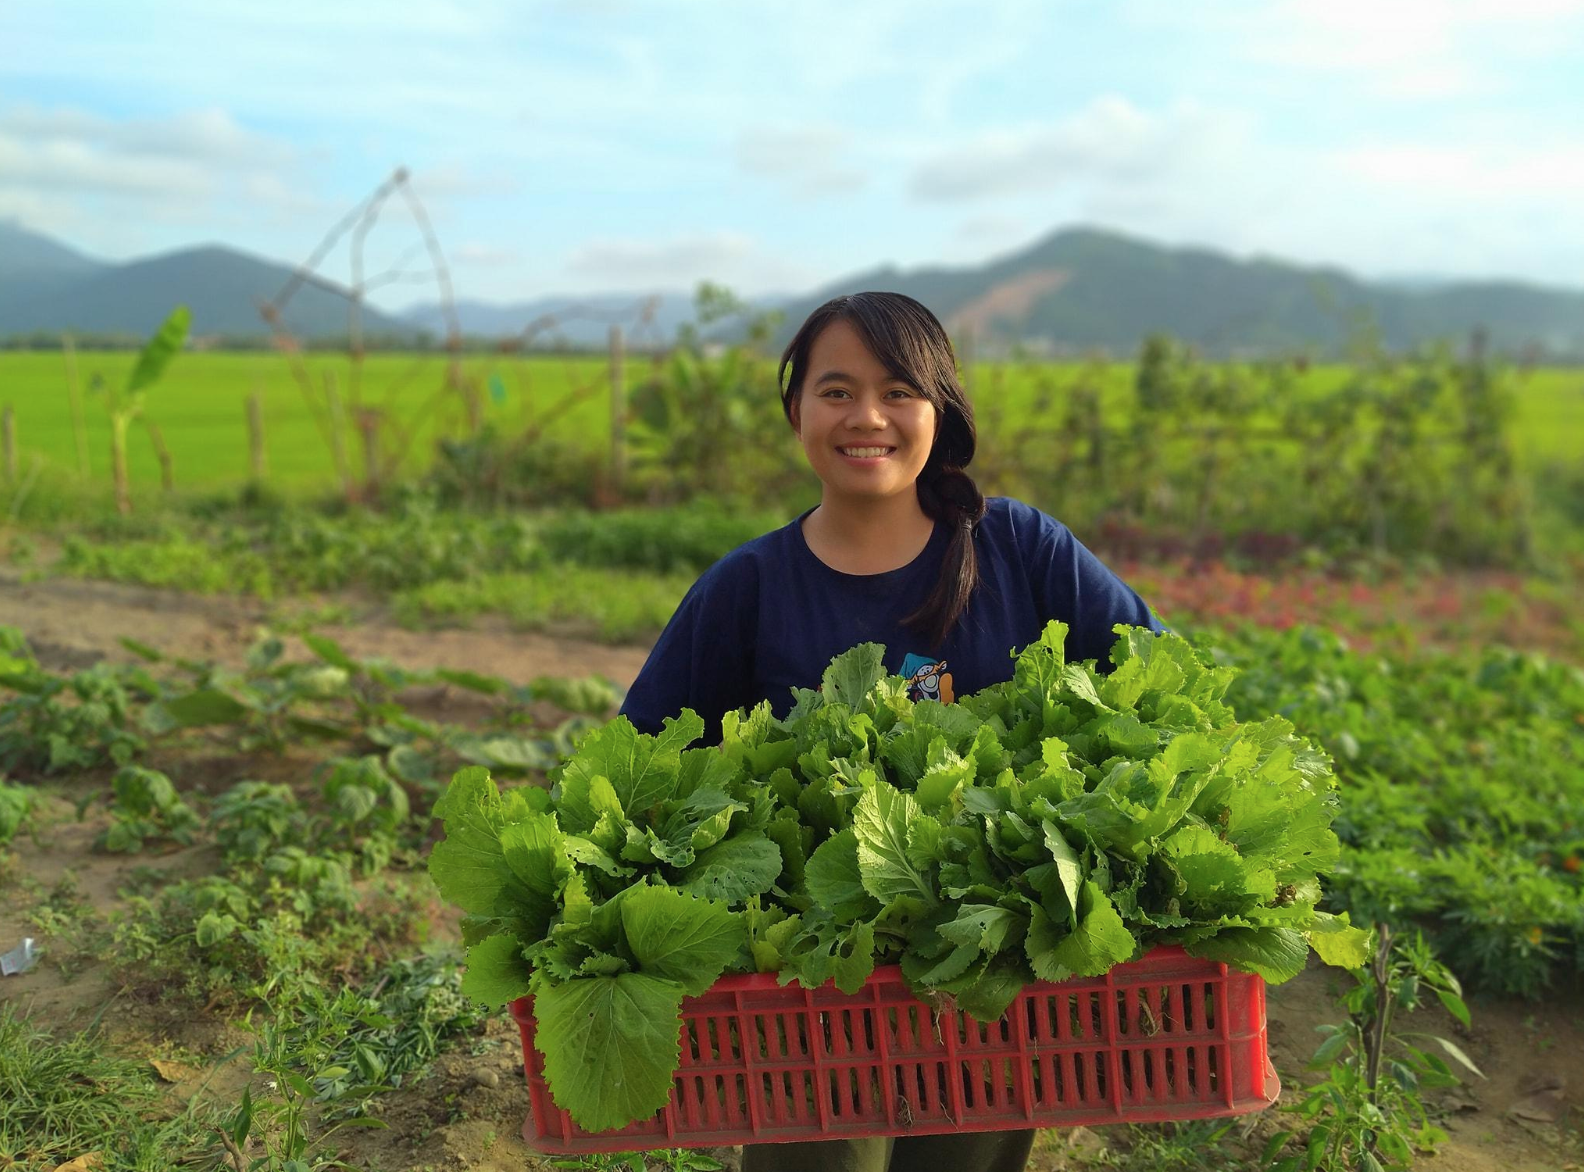 9X khởi nghiệp thành công với mô hình nông nghiệp công nghệ cao  Phong  cách  Vietnam VietnamPlus